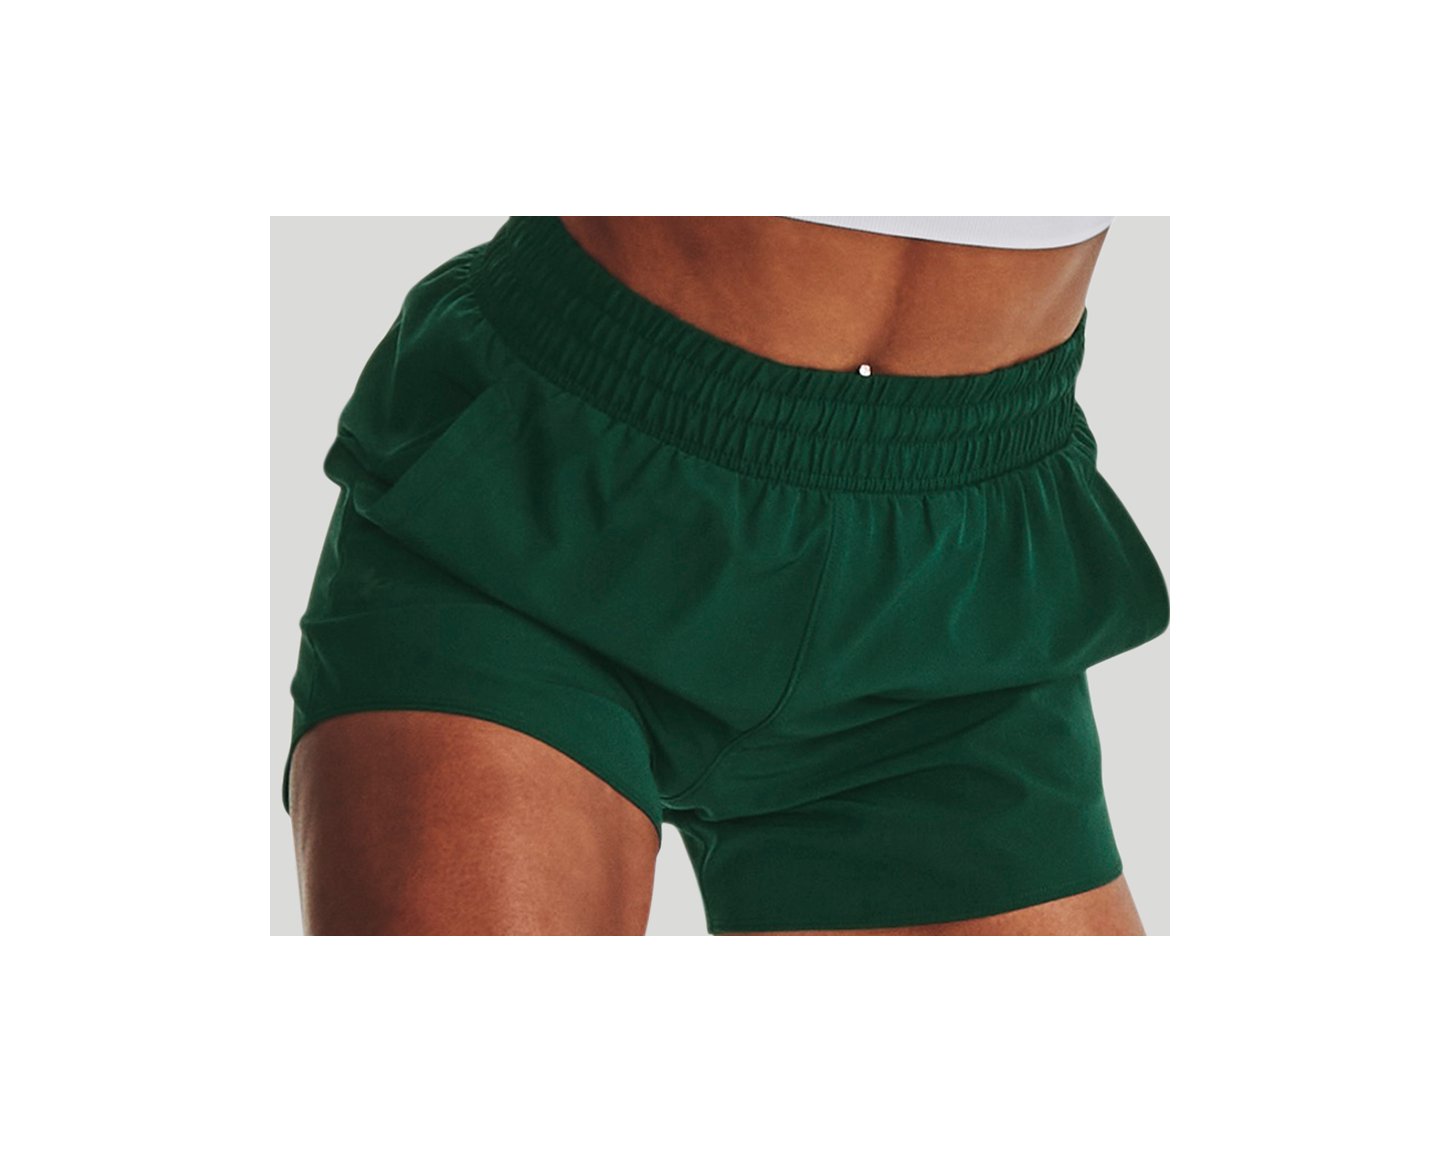 Under Armour Shorts - Women's Flex Woven 5”